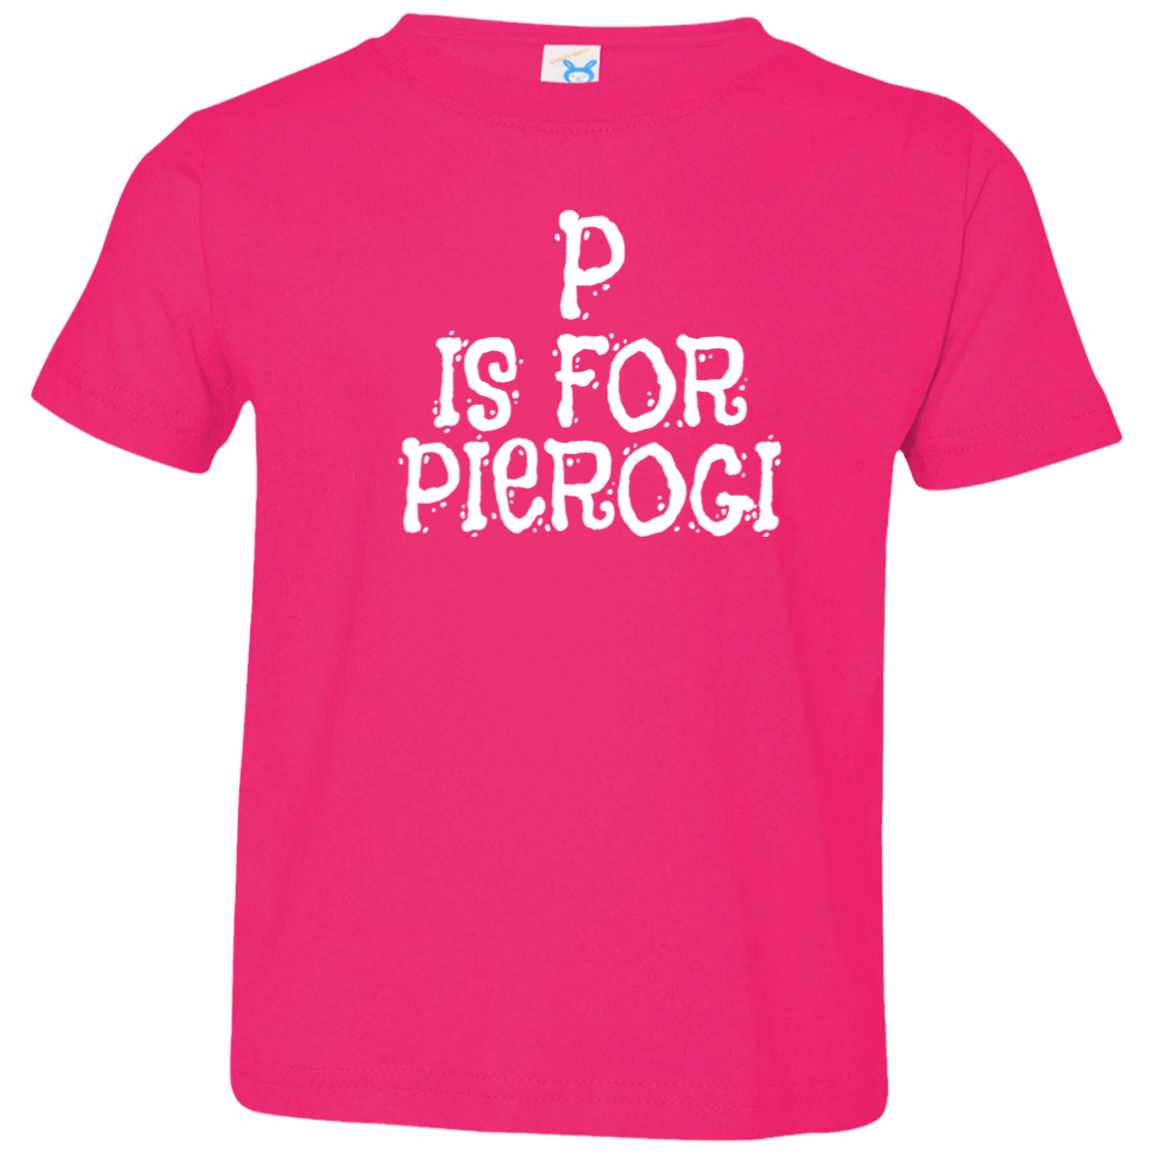 P Is For Pierogi Infant & Toddler T-Shirt Apparel CustomCat Toddler T-Shirt Hot Pink 2T